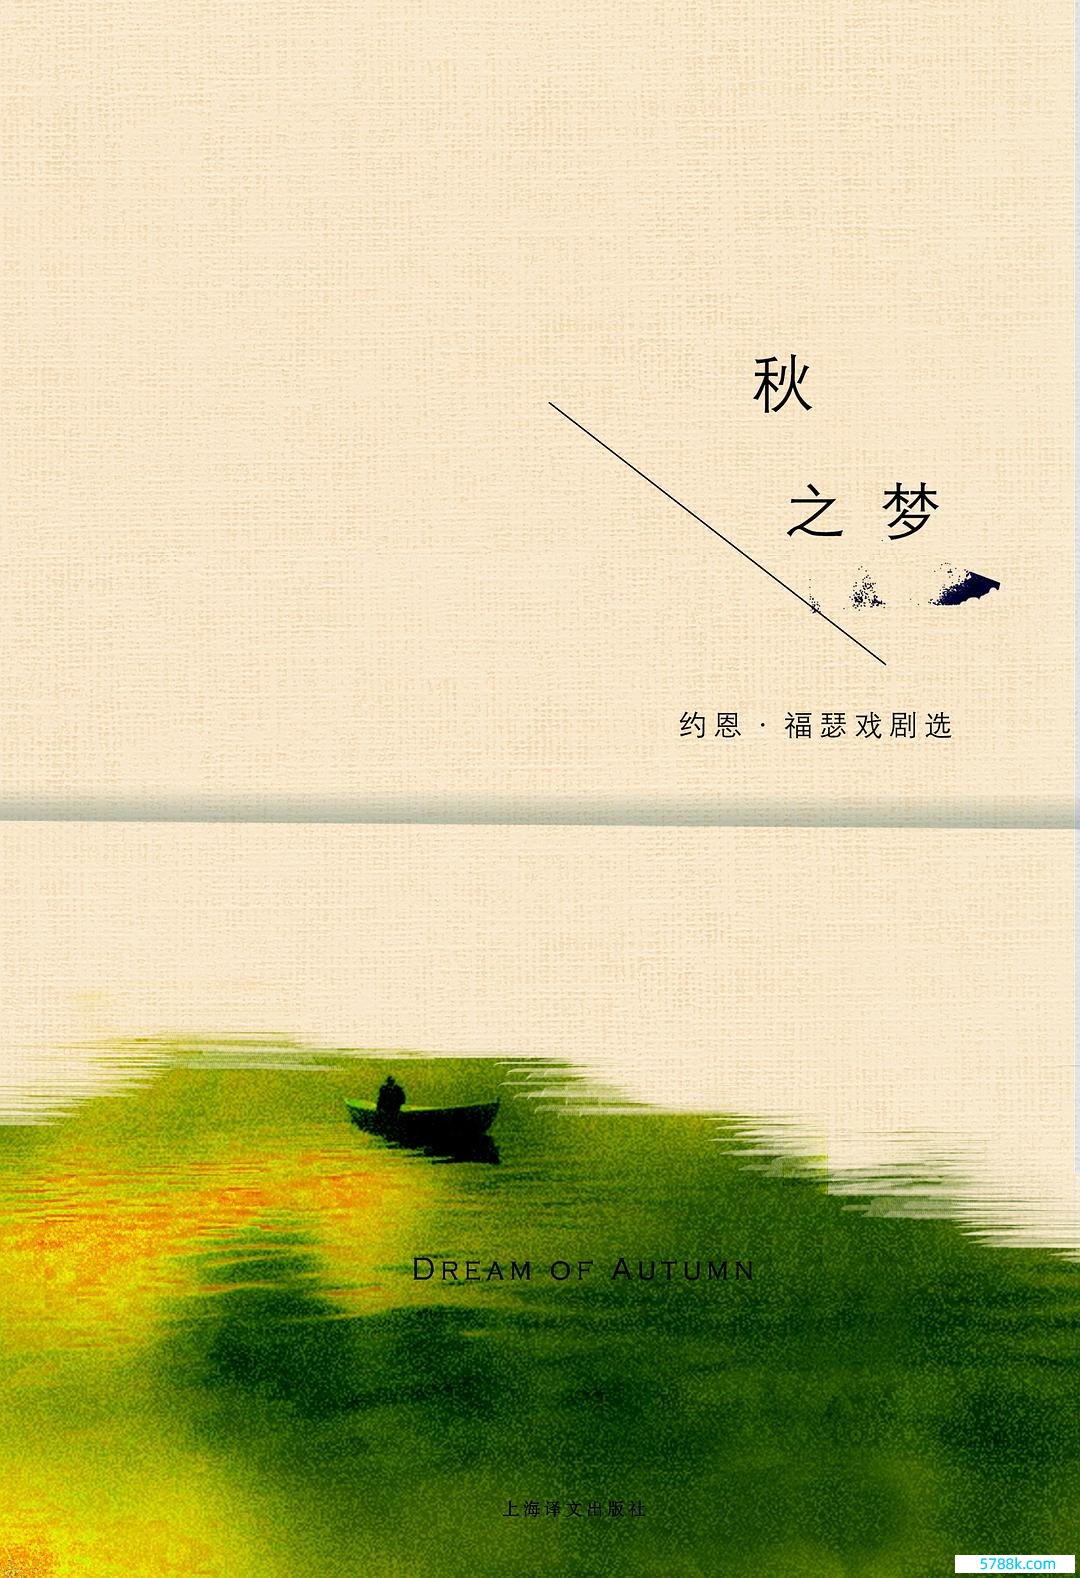 《秋之梦》，2016，上海译文出书社